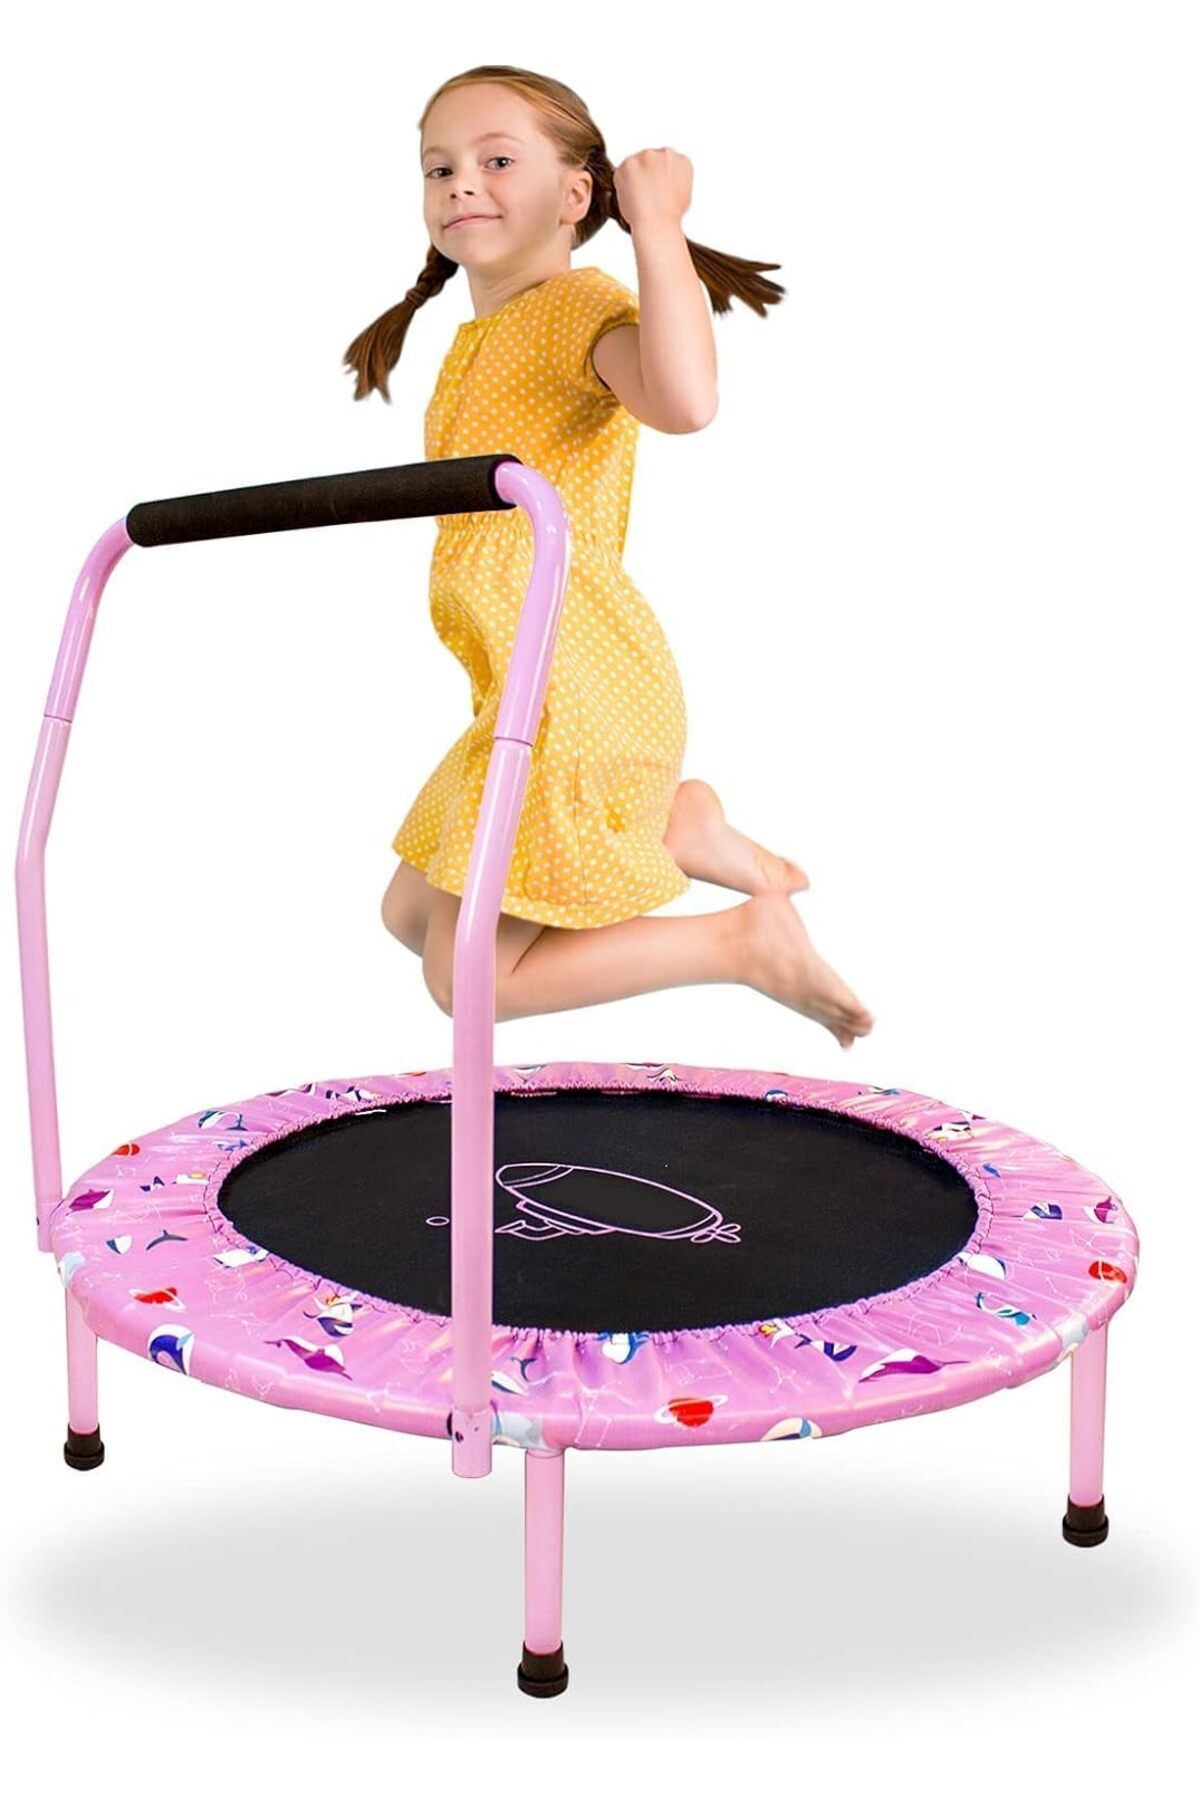 NUKied Mini Trambolin - Ayarlanabilir Saplı ve Güvenli Çocuk Egzersiz ve Oyun Trambolini